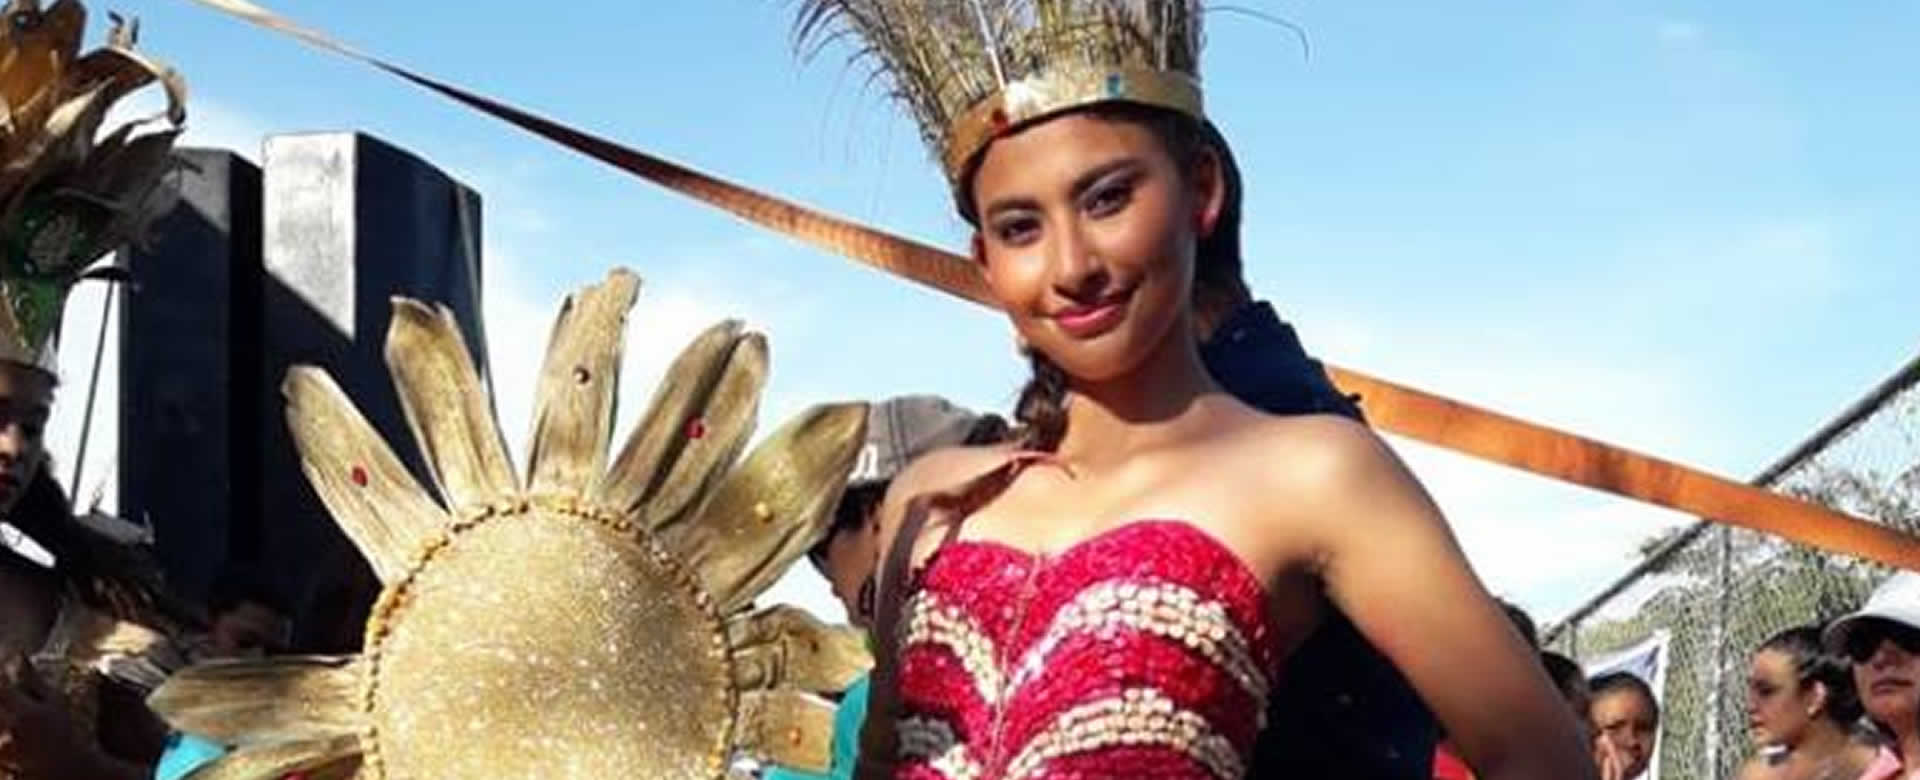 El municipio de Tola inicia tradicional desfile de reinas del maíz